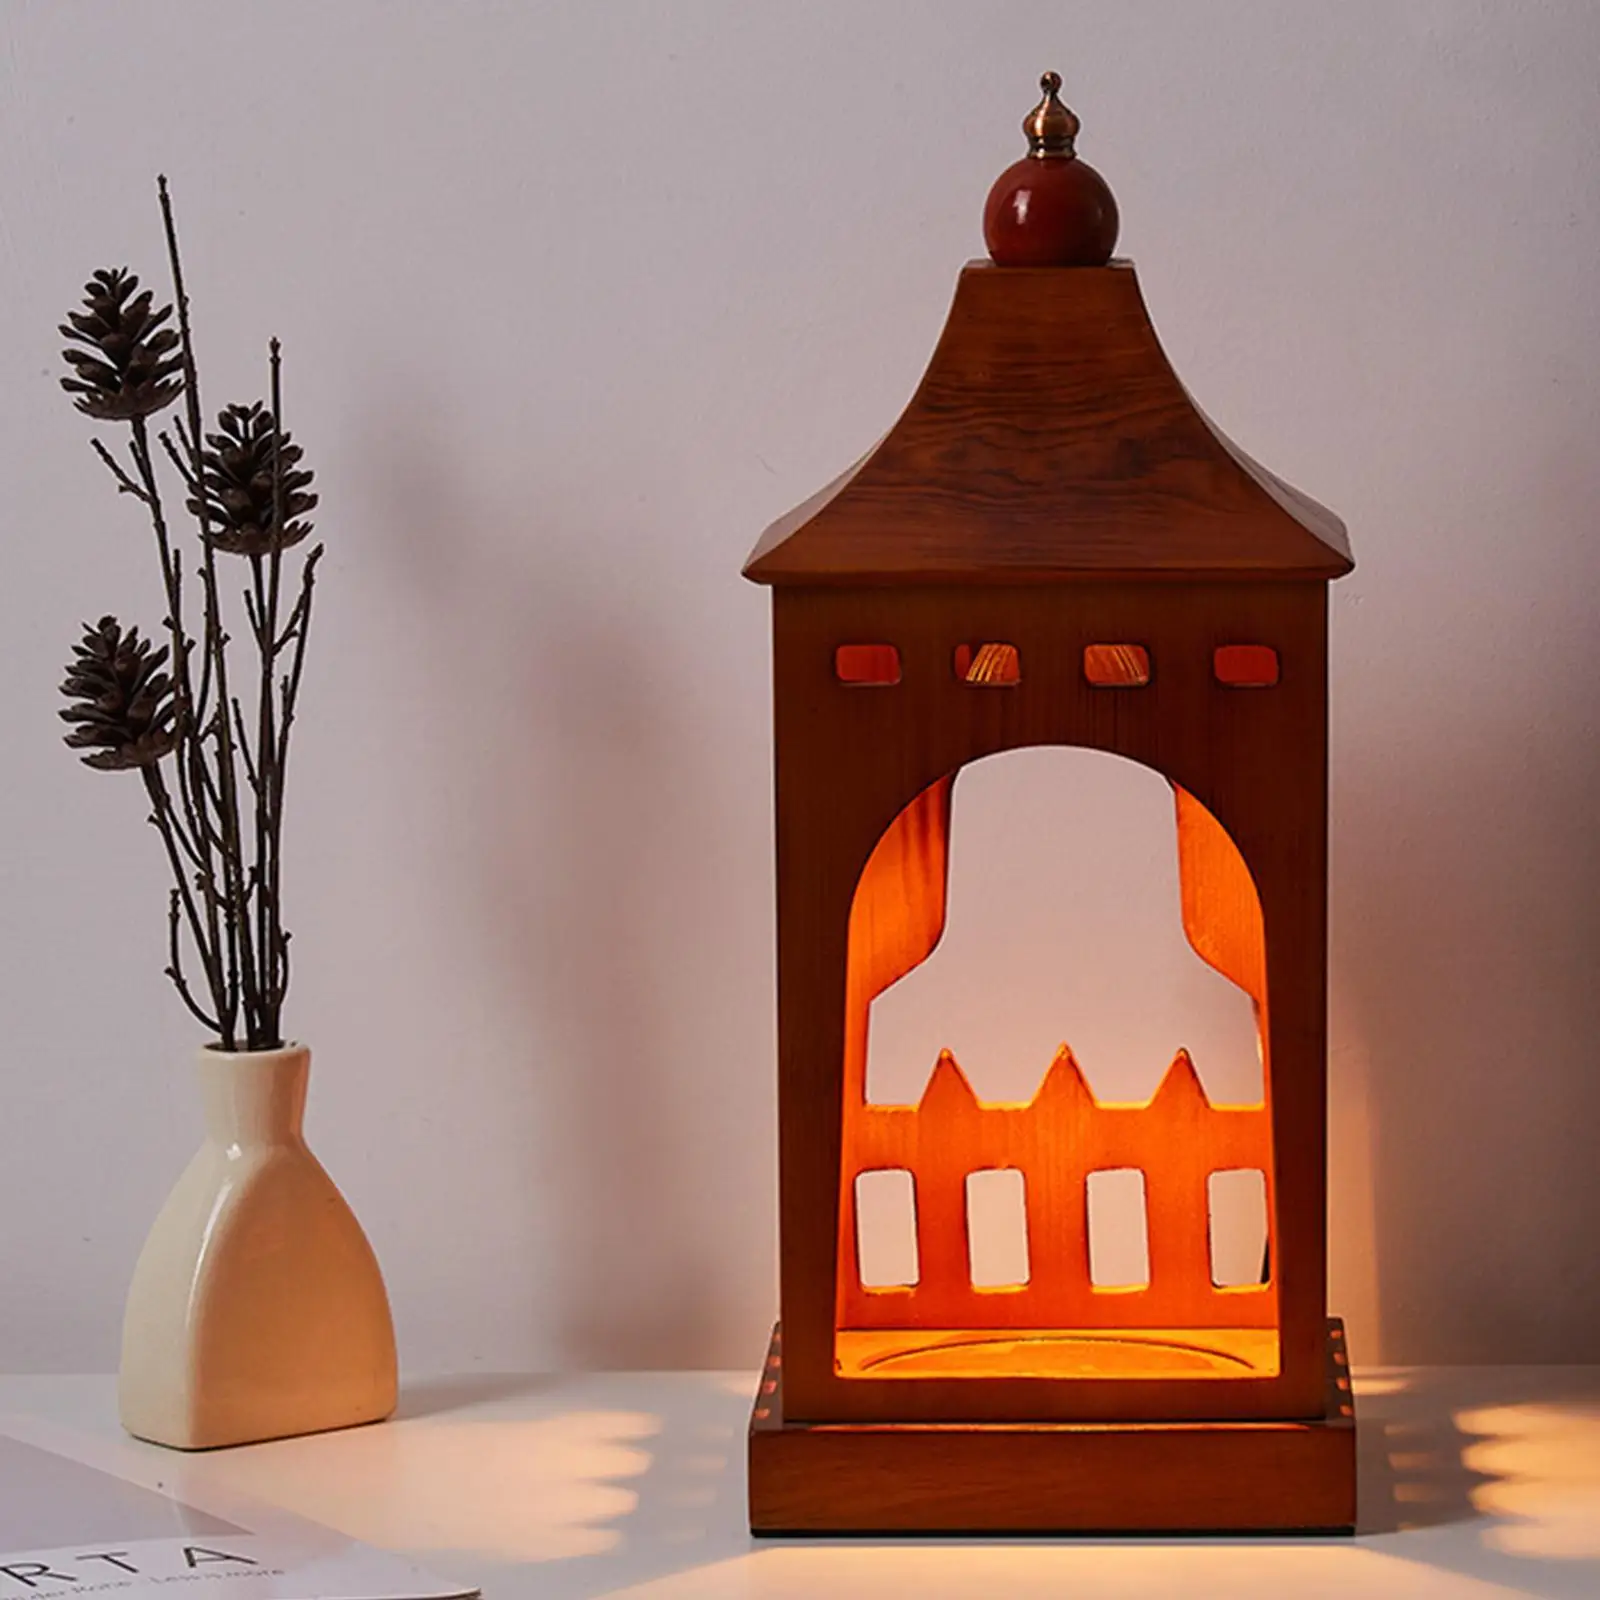 Wooden Candle Warmer Decor Fragrance Creative Burner Melting Lamp Fragrance Light for Office Bedside Table Home